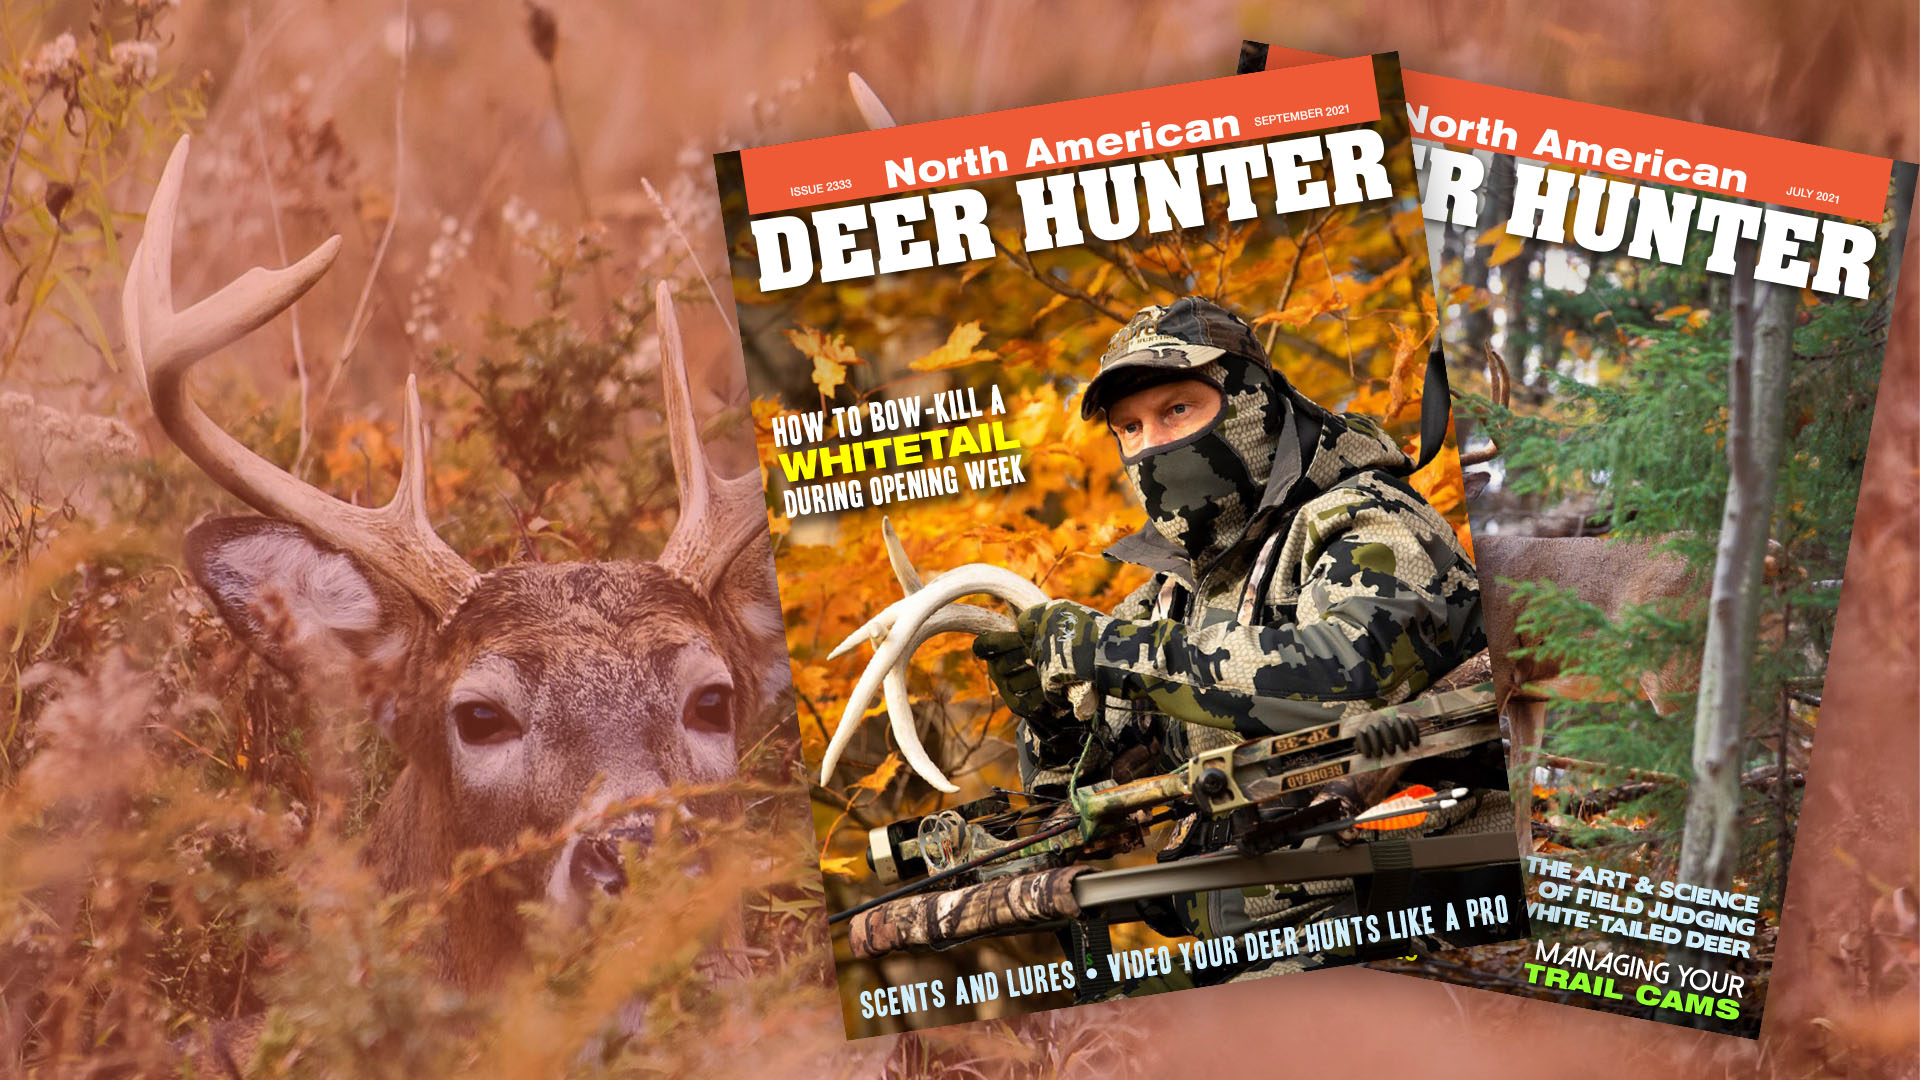 Deer & Deer Hunting Magazine